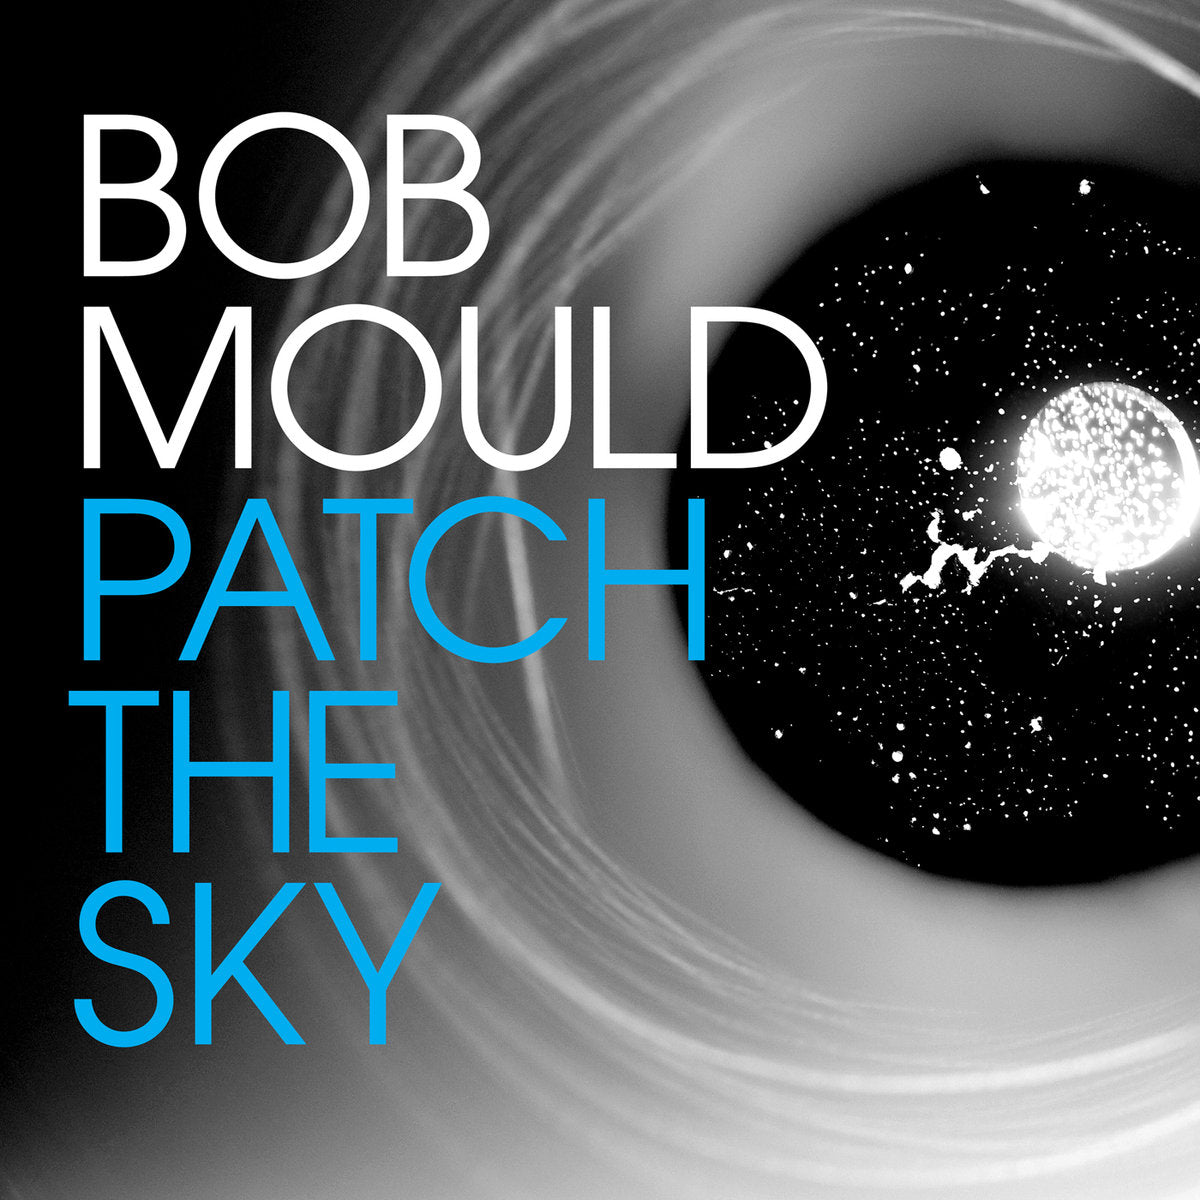 Bob Mould - Patch The Sky LP - Vinyl - Merge